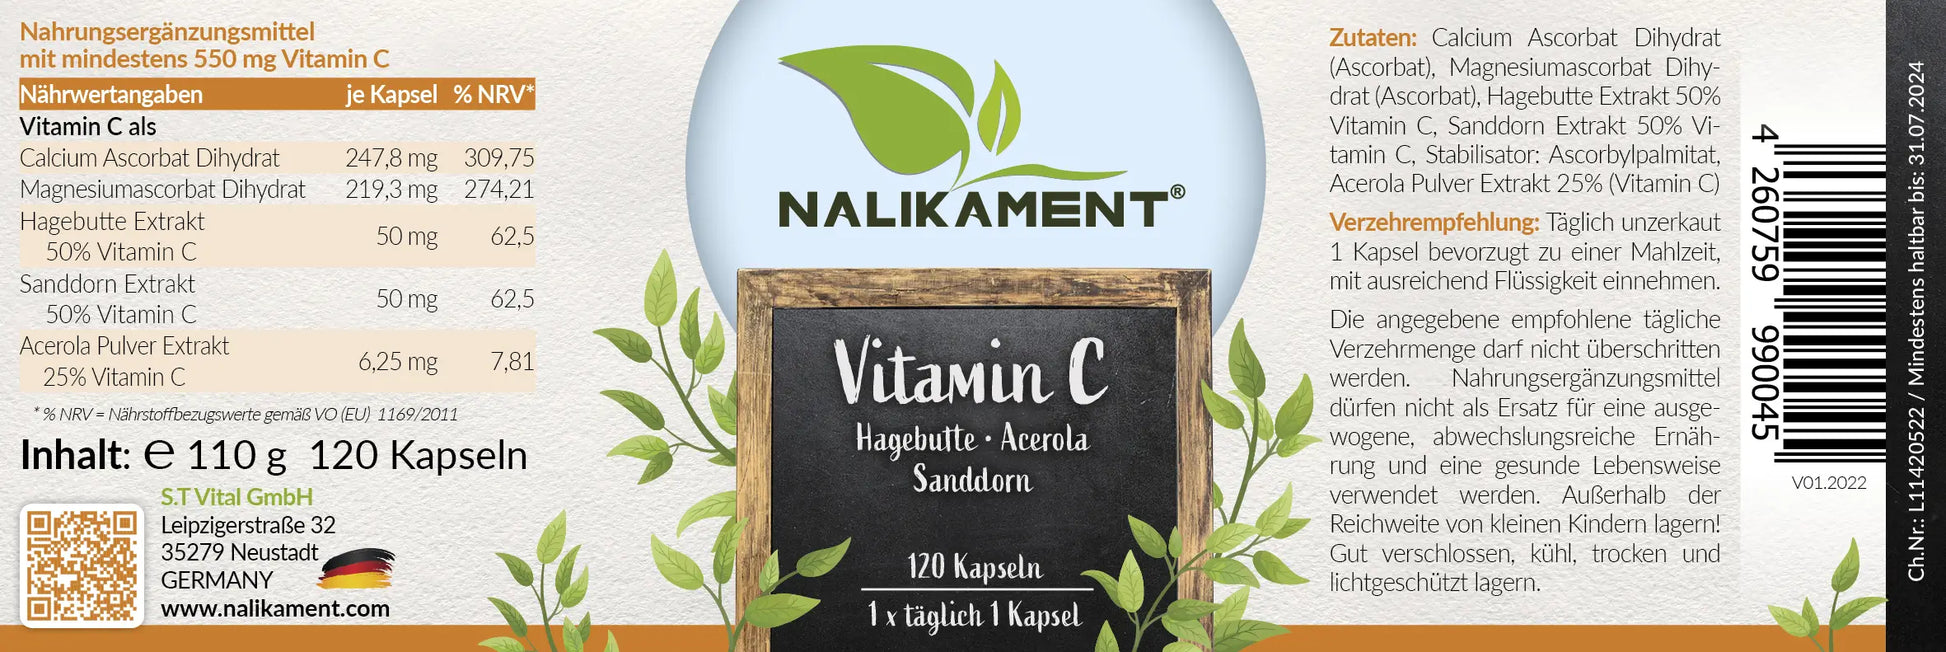 Dieses Nahrungsergänzungsmittel mit Vitamin C von Nalikament unterstützt Ihre Abwehrkräfte und beugt Vitamin-C-Mangel vor, damit Sie gesund und vital bleiben - und noch viele weitere Dinge!